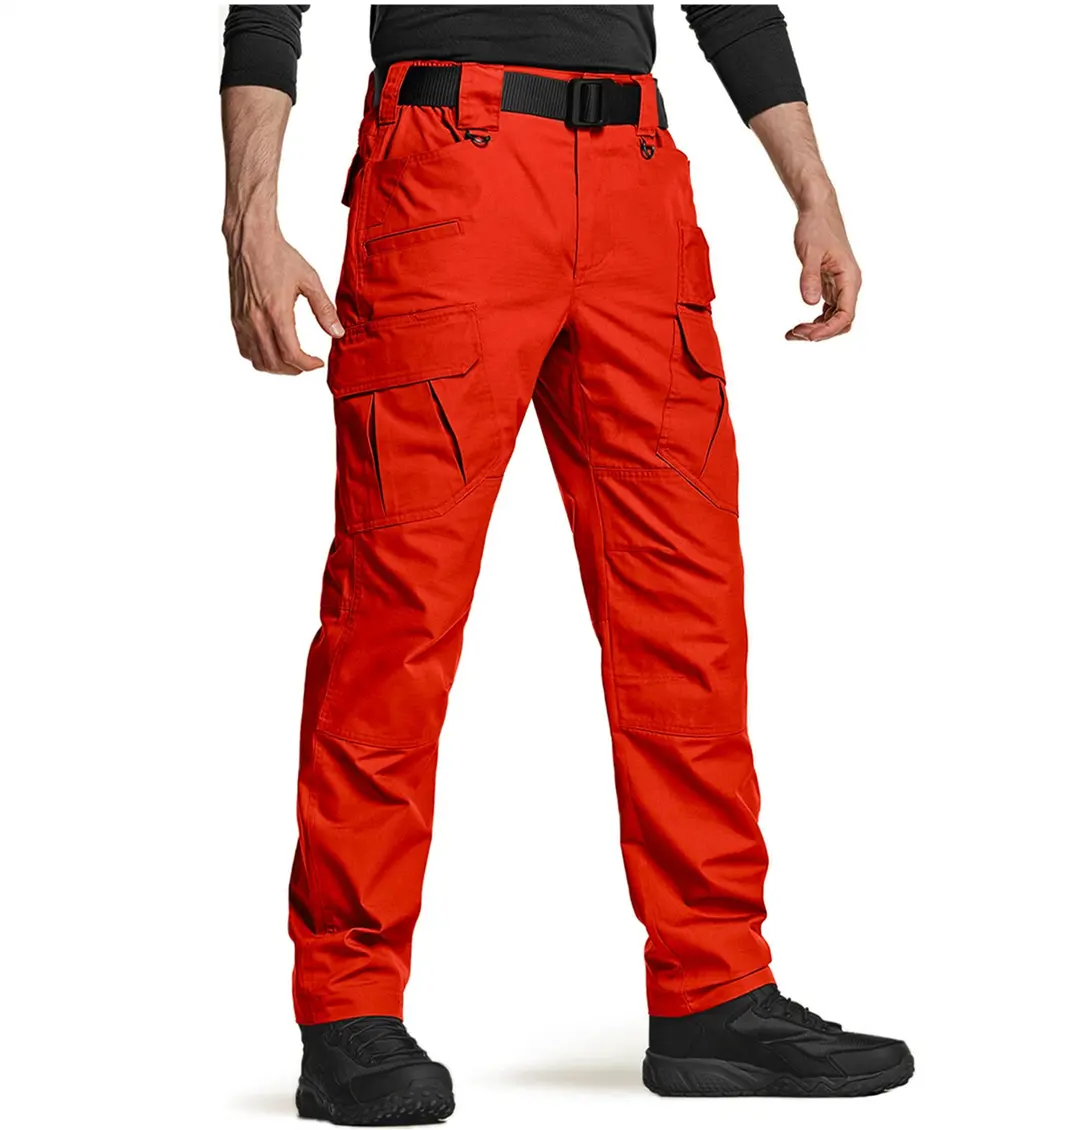 AQTQ pantaloni Cargo all'ingrosso cintura tasca polpaccio Casual vendita calda pantaloni da trekking moda nuovi pantaloni Cargo tattici da uomo per gli uomini